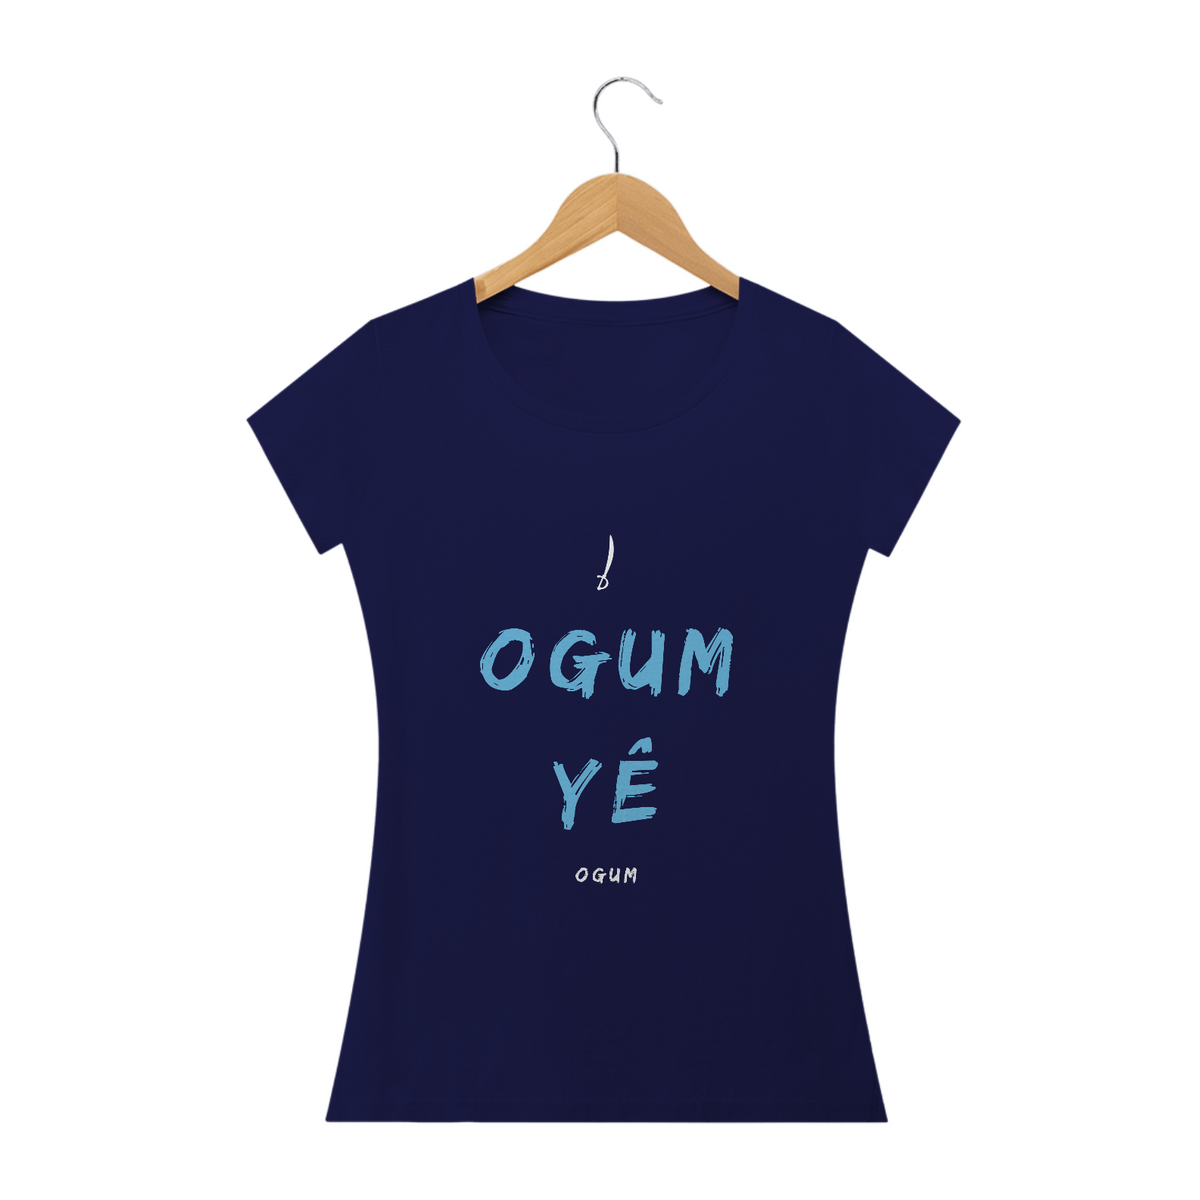 Nome do produto: Camiseta Feminina Ògún Saudação Ògún Yè 100% Algodão Fio 24.1, 145g costura simples e gola ribana